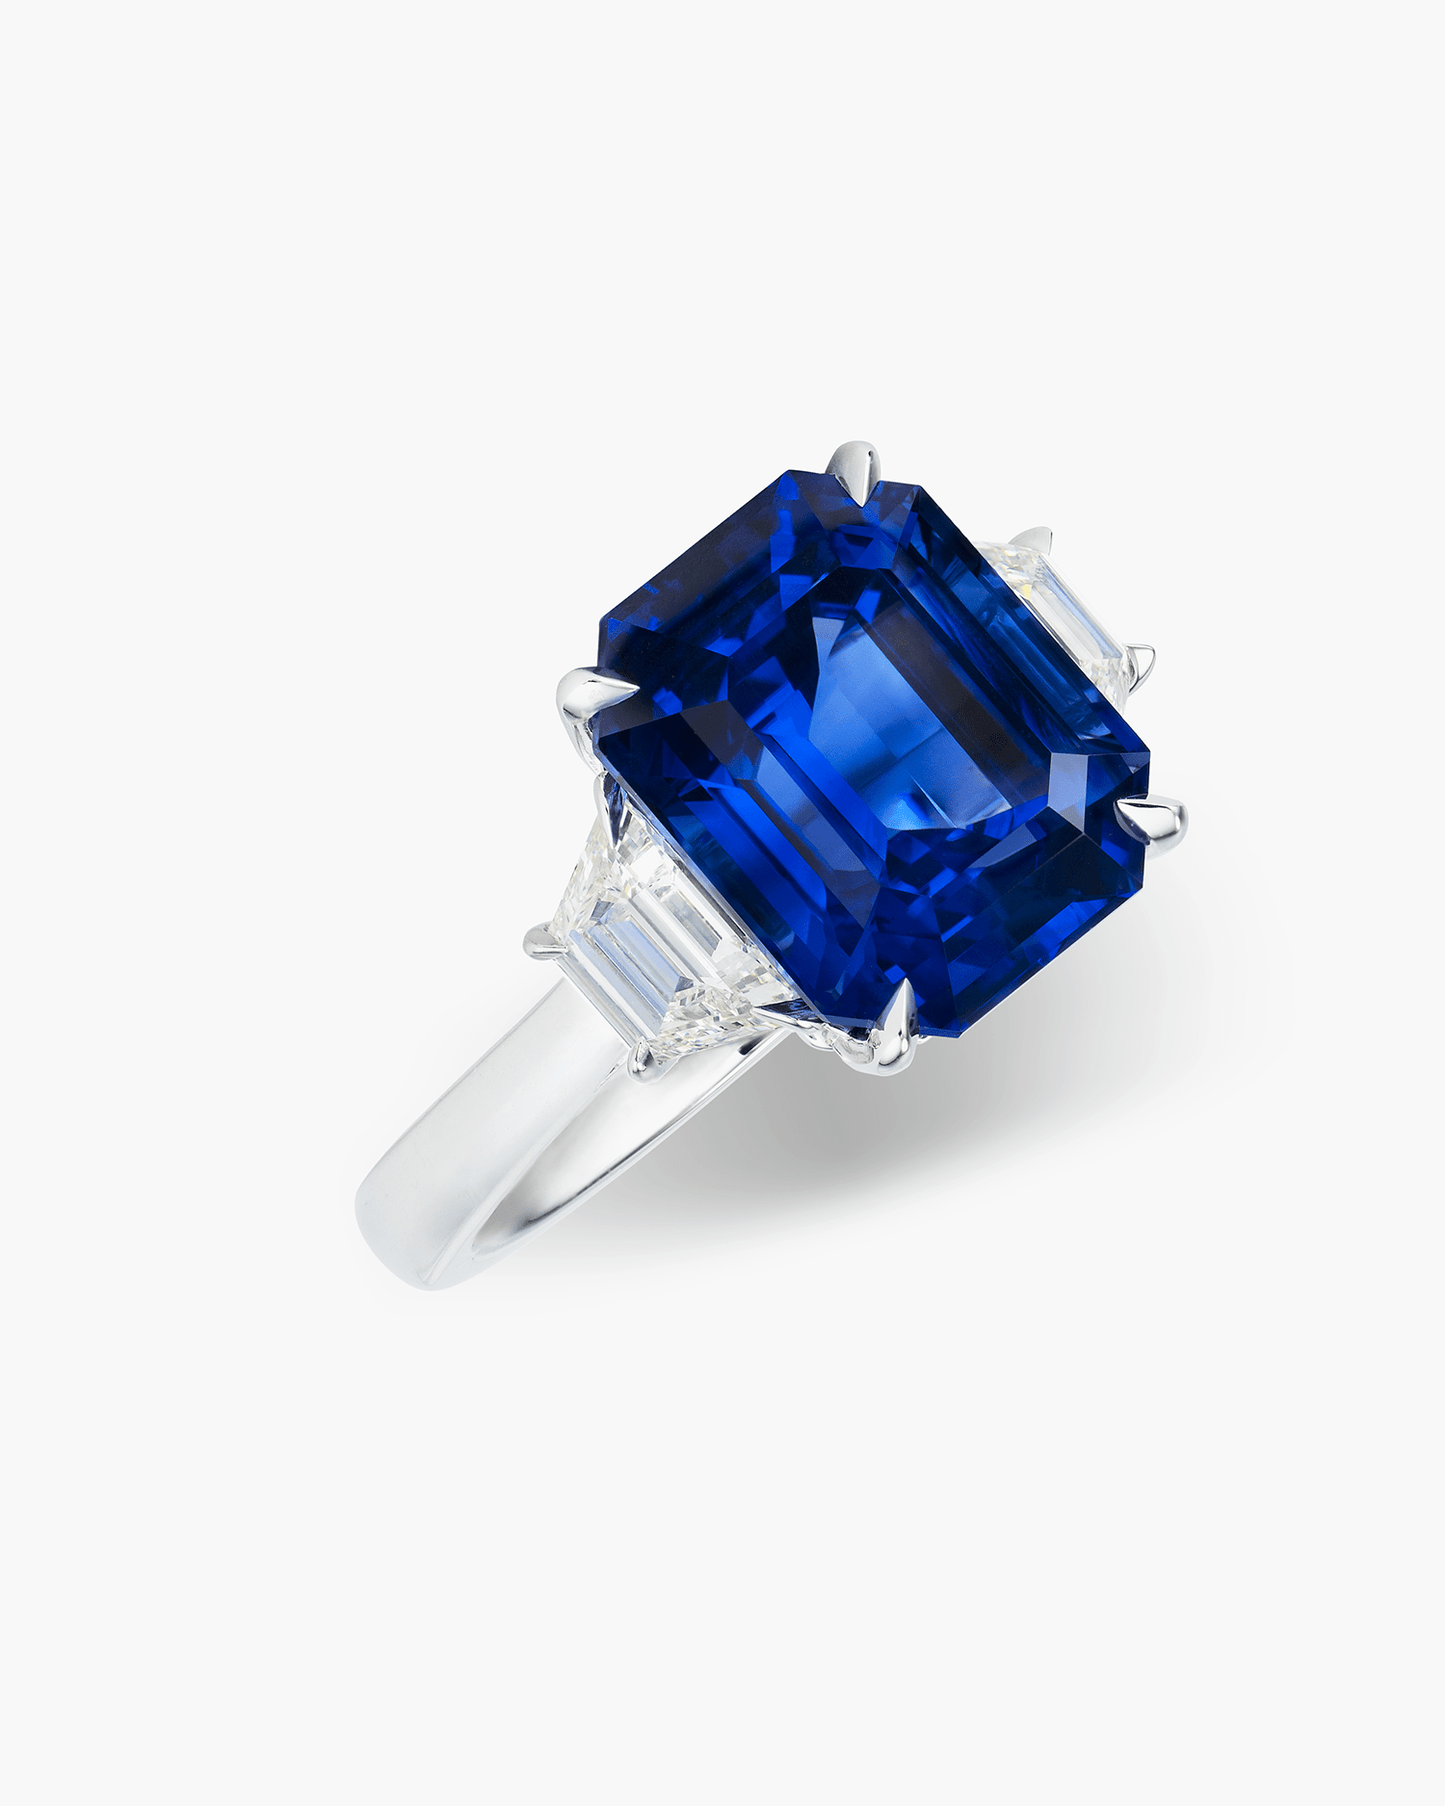 7.25 carat Emerald Cut Ceylon Sapphire and Diamond Ring